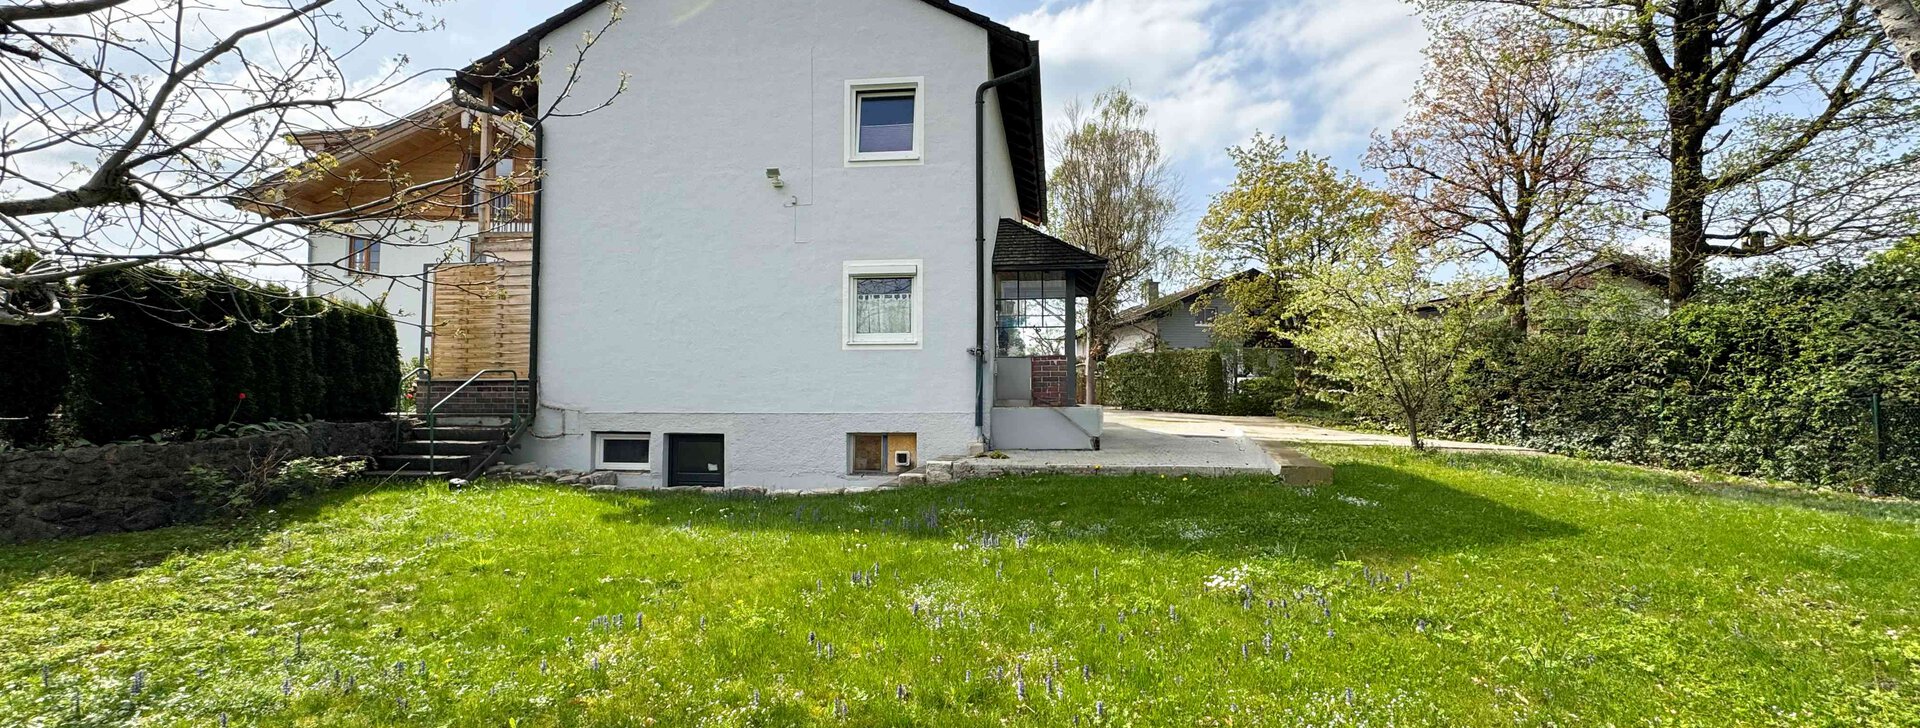 Außenansicht mit Garten, Einfamilienhaus, Immobilie kaufen, Wolkersdorf-Traunstein | © HausBauHaus GmbH 